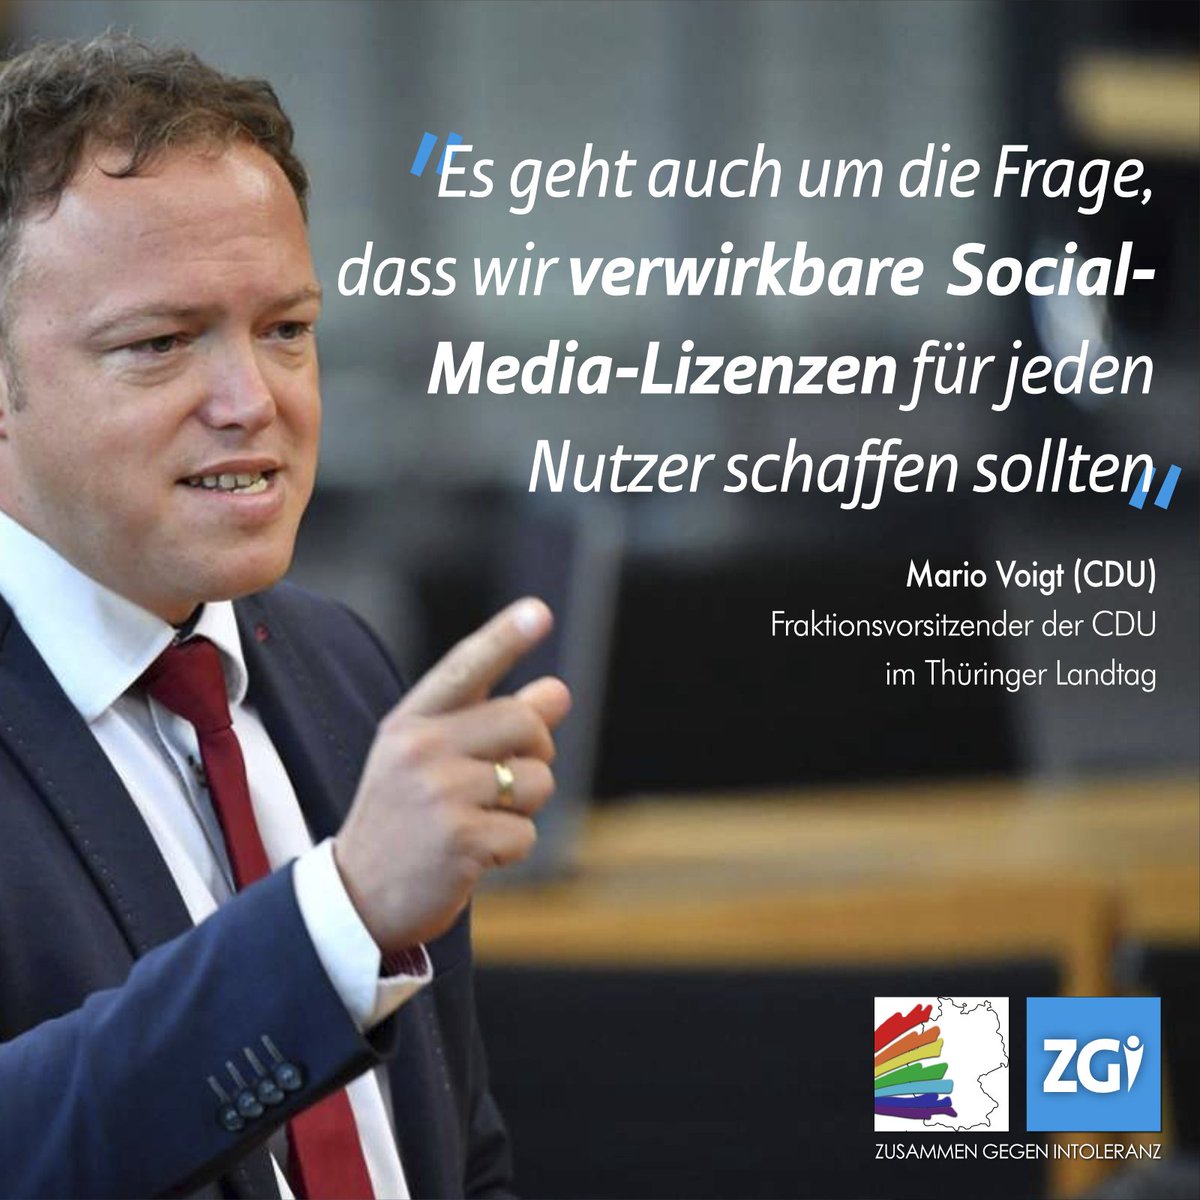 Nach ZGI fordert nun auch Mario Voigt (CDU, Gegenkandidat von Bernd Höcke) neben einer Klarnamenpflicht verwirkbare Social-Media-Lizenzen für unsere Bürger:innen - damit Gefährder, also „Menschen“, die rechte Kritik an der Regierung äußern, nicht weiter ihren Hass verbreiten.